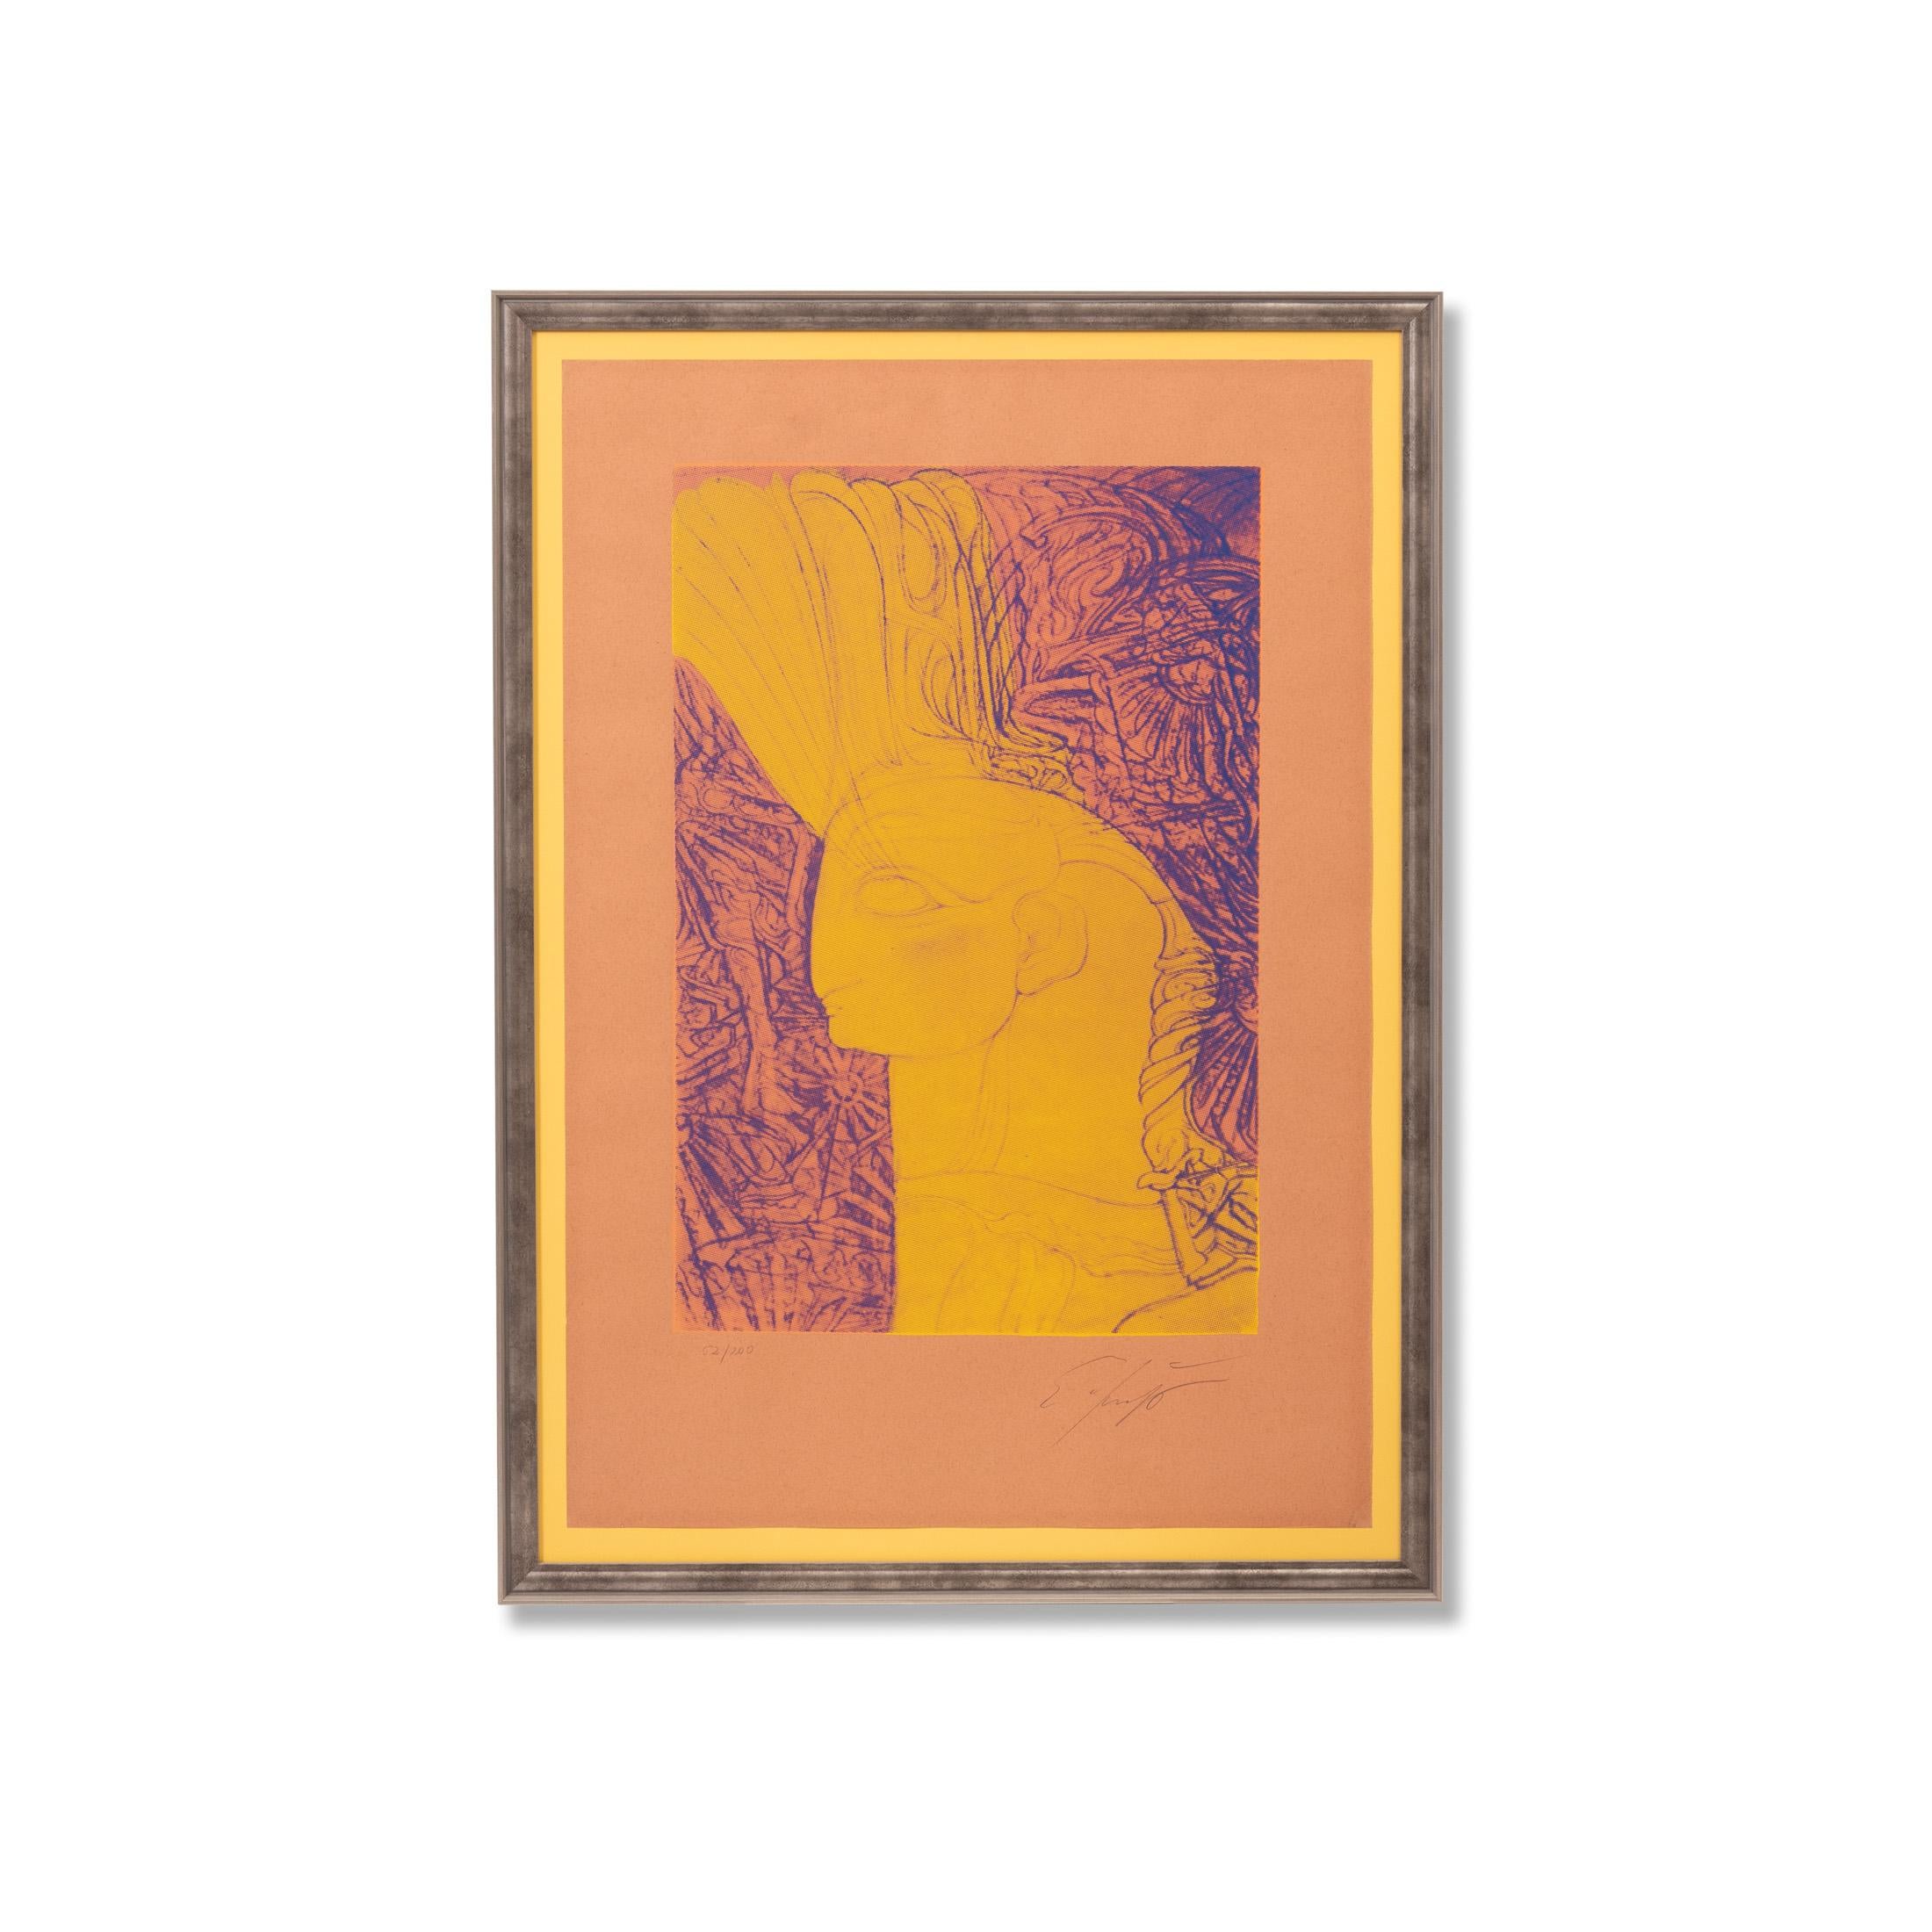 Ernst Fuchs (1930 - 2015)

« Hauteur d'un chérubin », créé en 1982

Sérigraphie couleur, éd. 200 pièces, signées et numérotées

Dimensions 67,7 cm x 45 cm

Ernst Fuchs est né le 13 février 1930 à Vienne, seul enfant de Maximilian et Leopoldine Fuchs